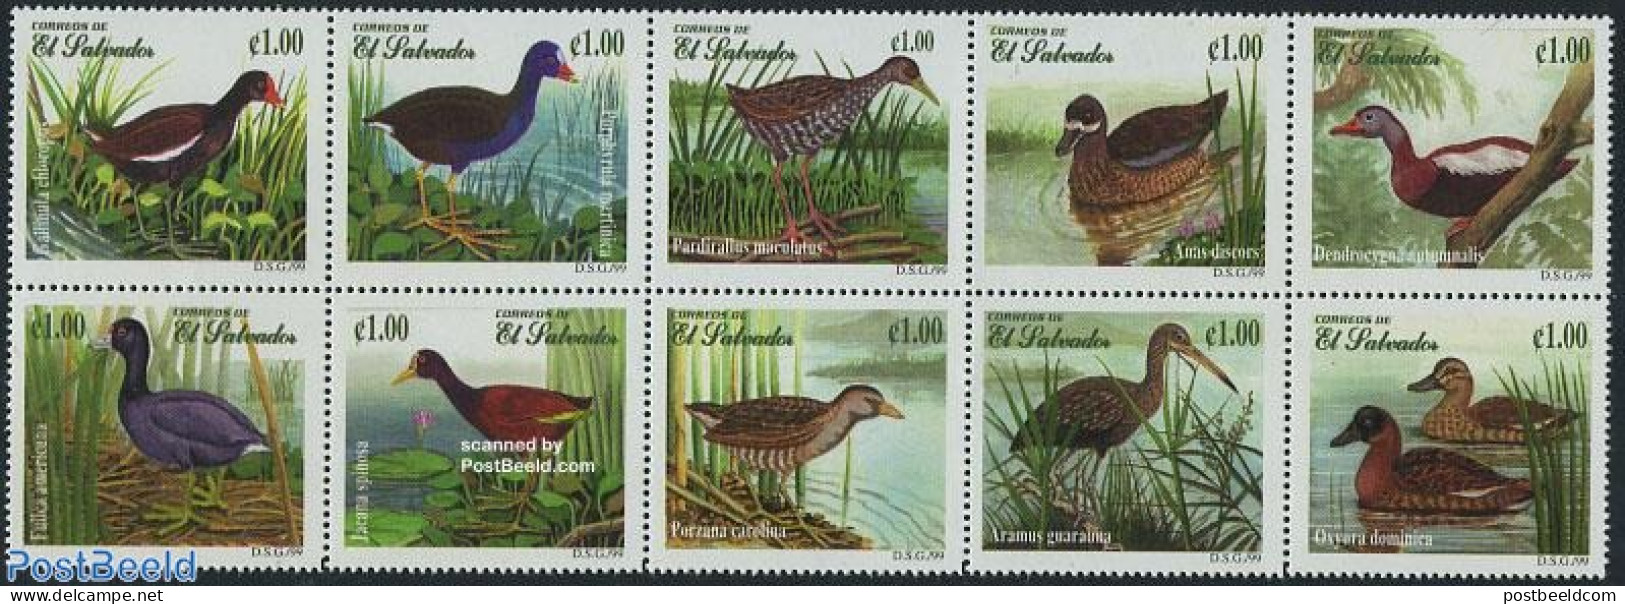 El Salvador 1999 Ducks 10v [++++], Mint NH, Nature - Birds - Ducks - El Salvador